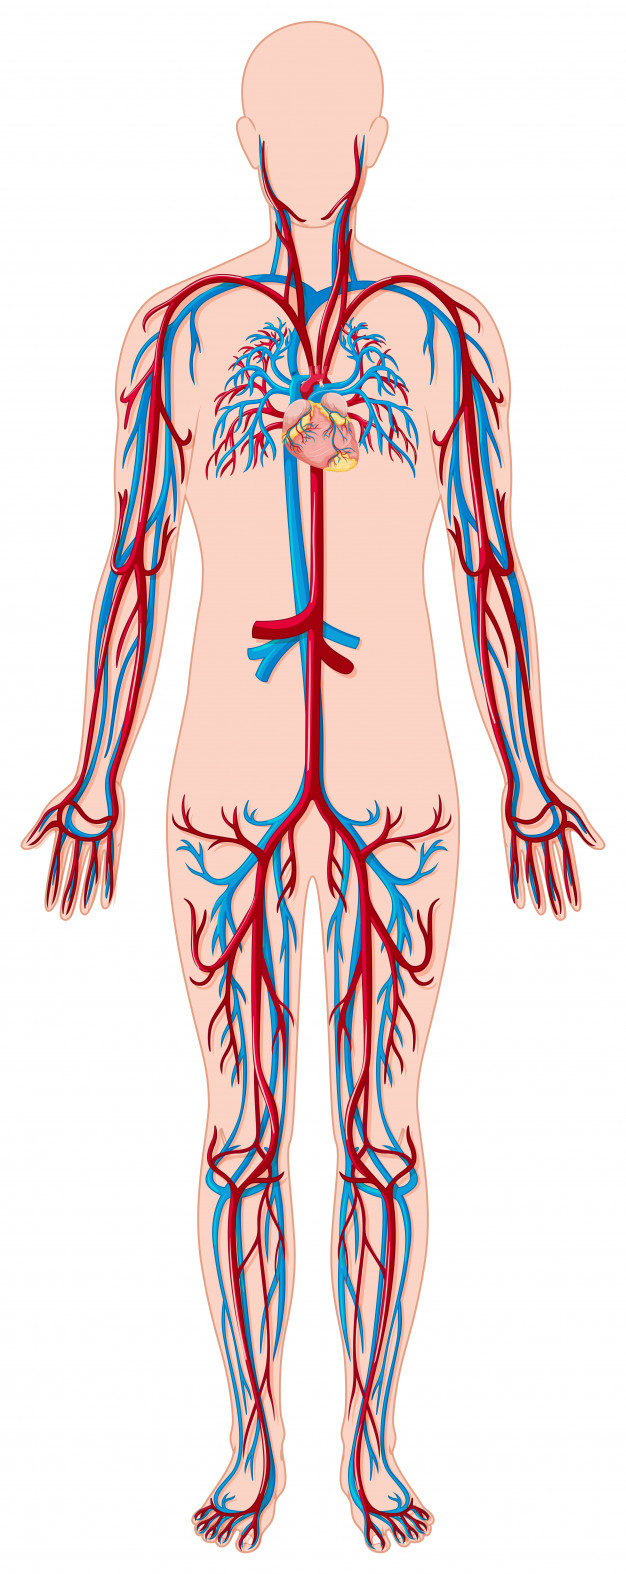 Blutgefäße im menschlichen Körper